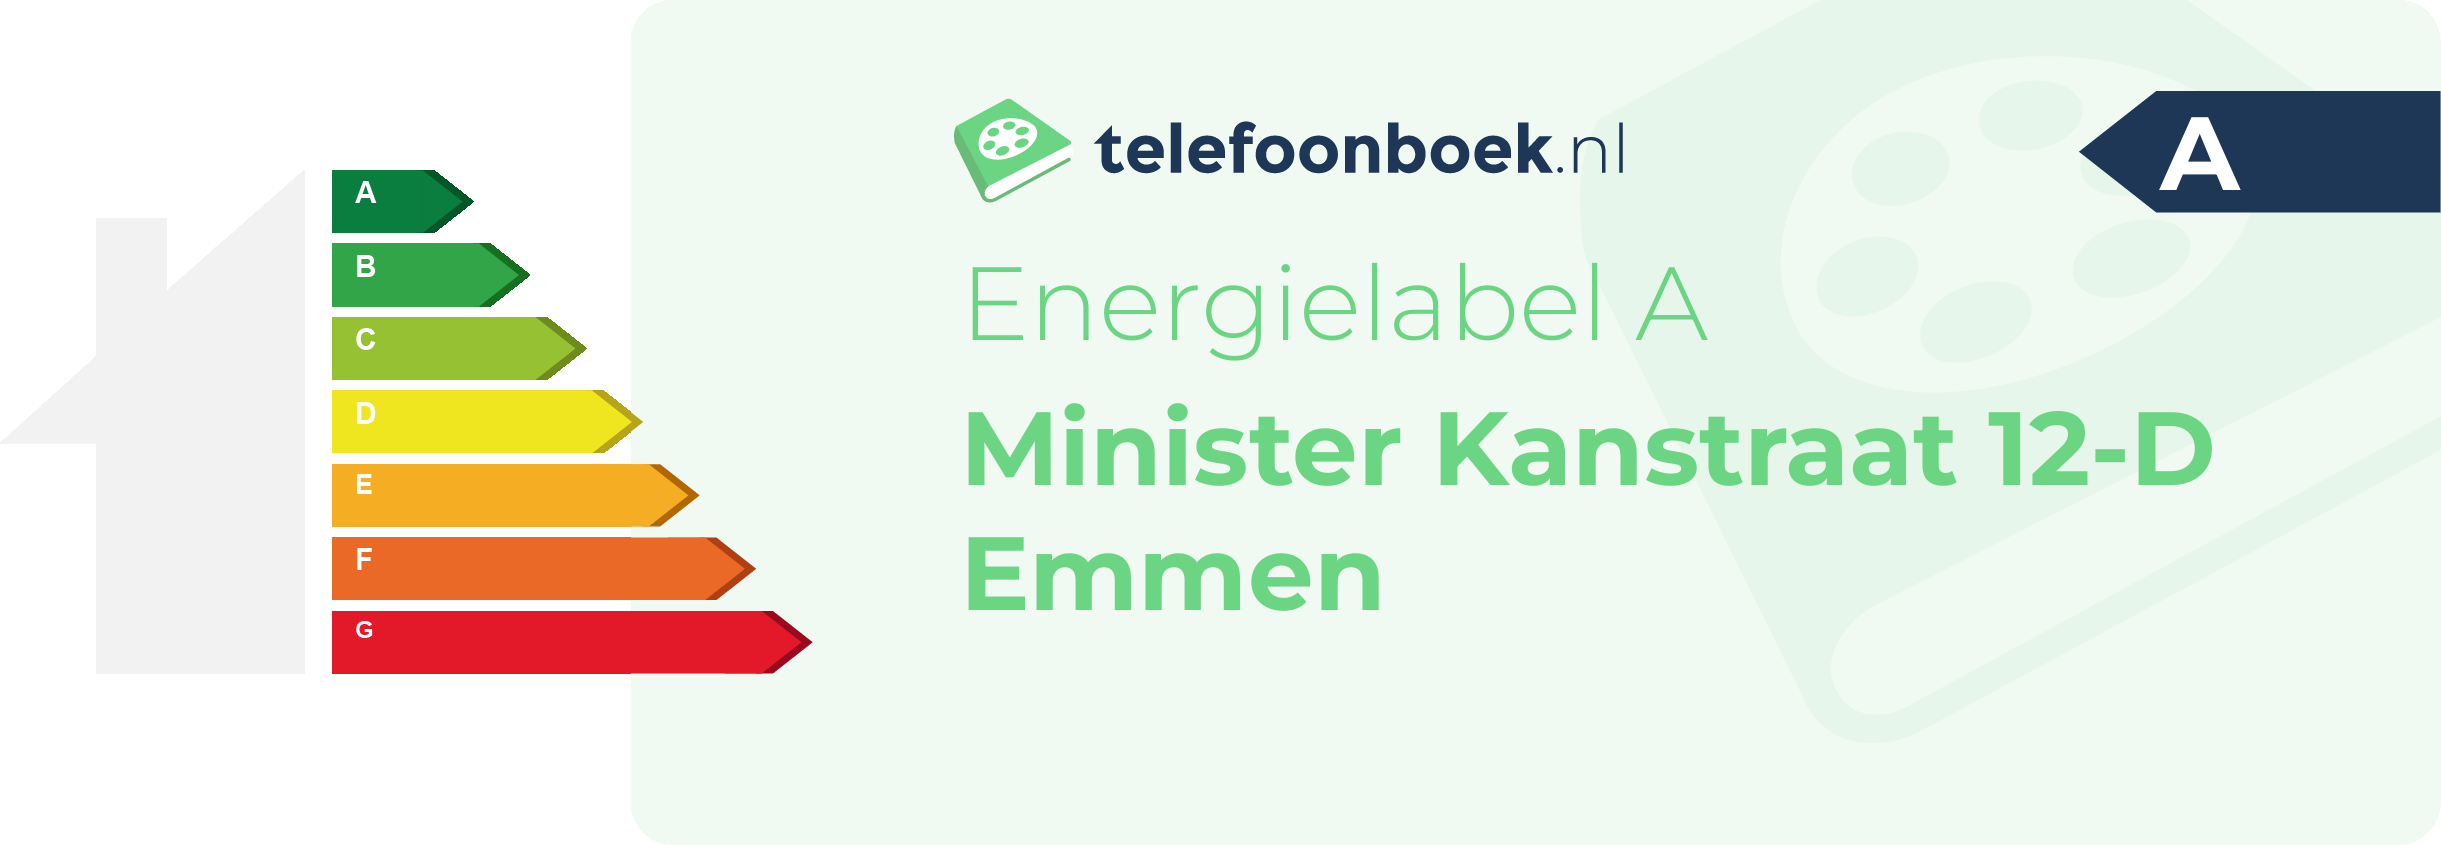 Energielabel Minister Kanstraat 12-D Emmen